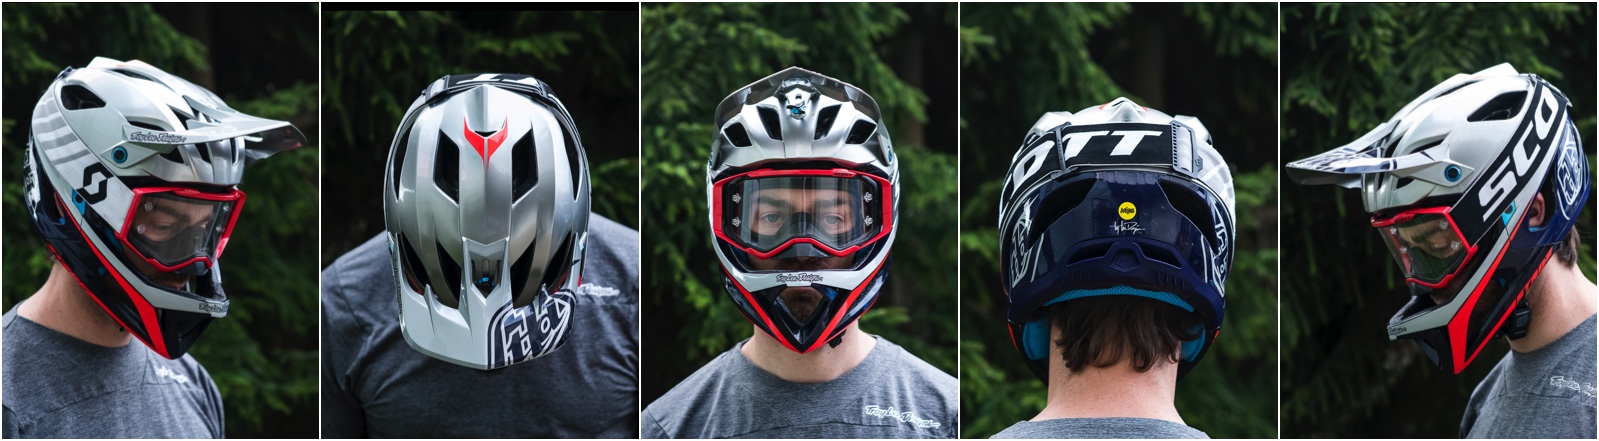 troy lee designs stage full face helmet